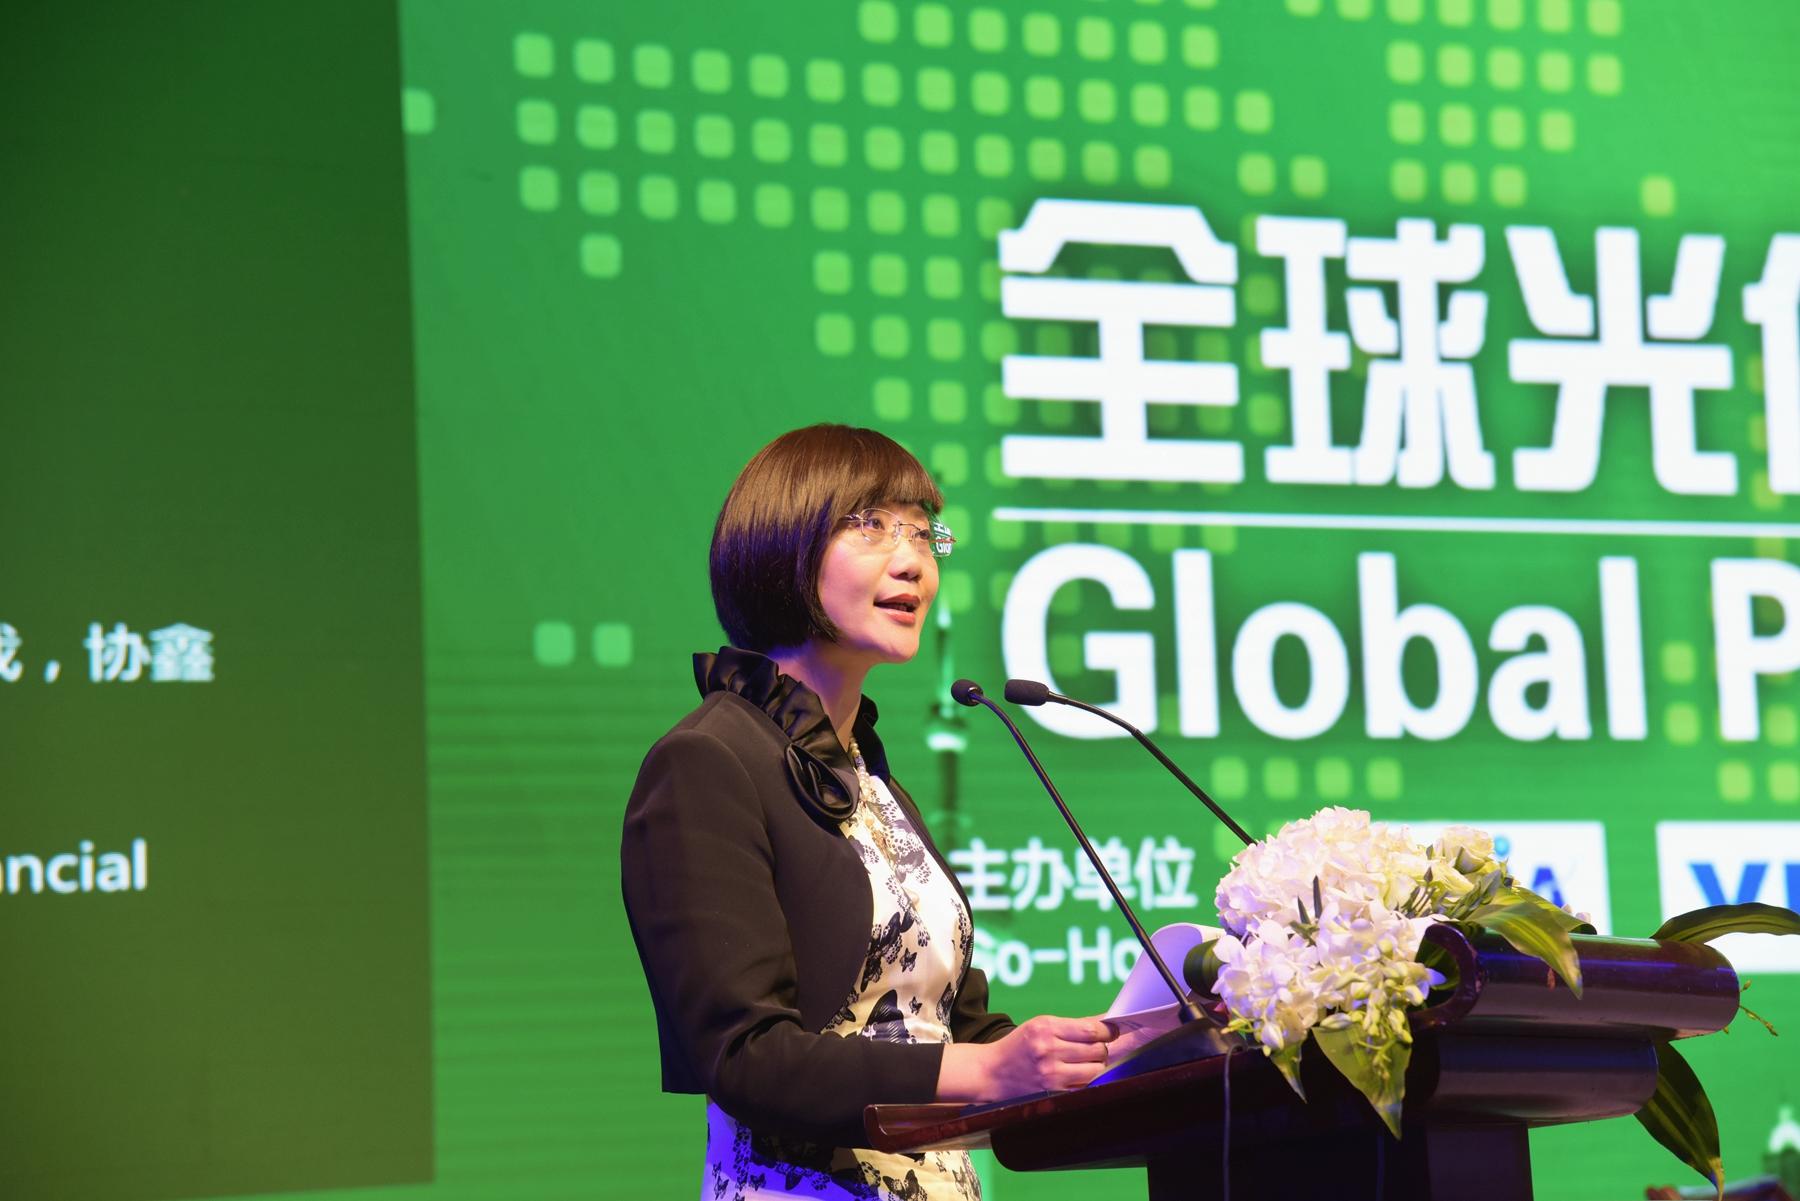 上海热线财经频道--全球光伏金融峰会在沪举行